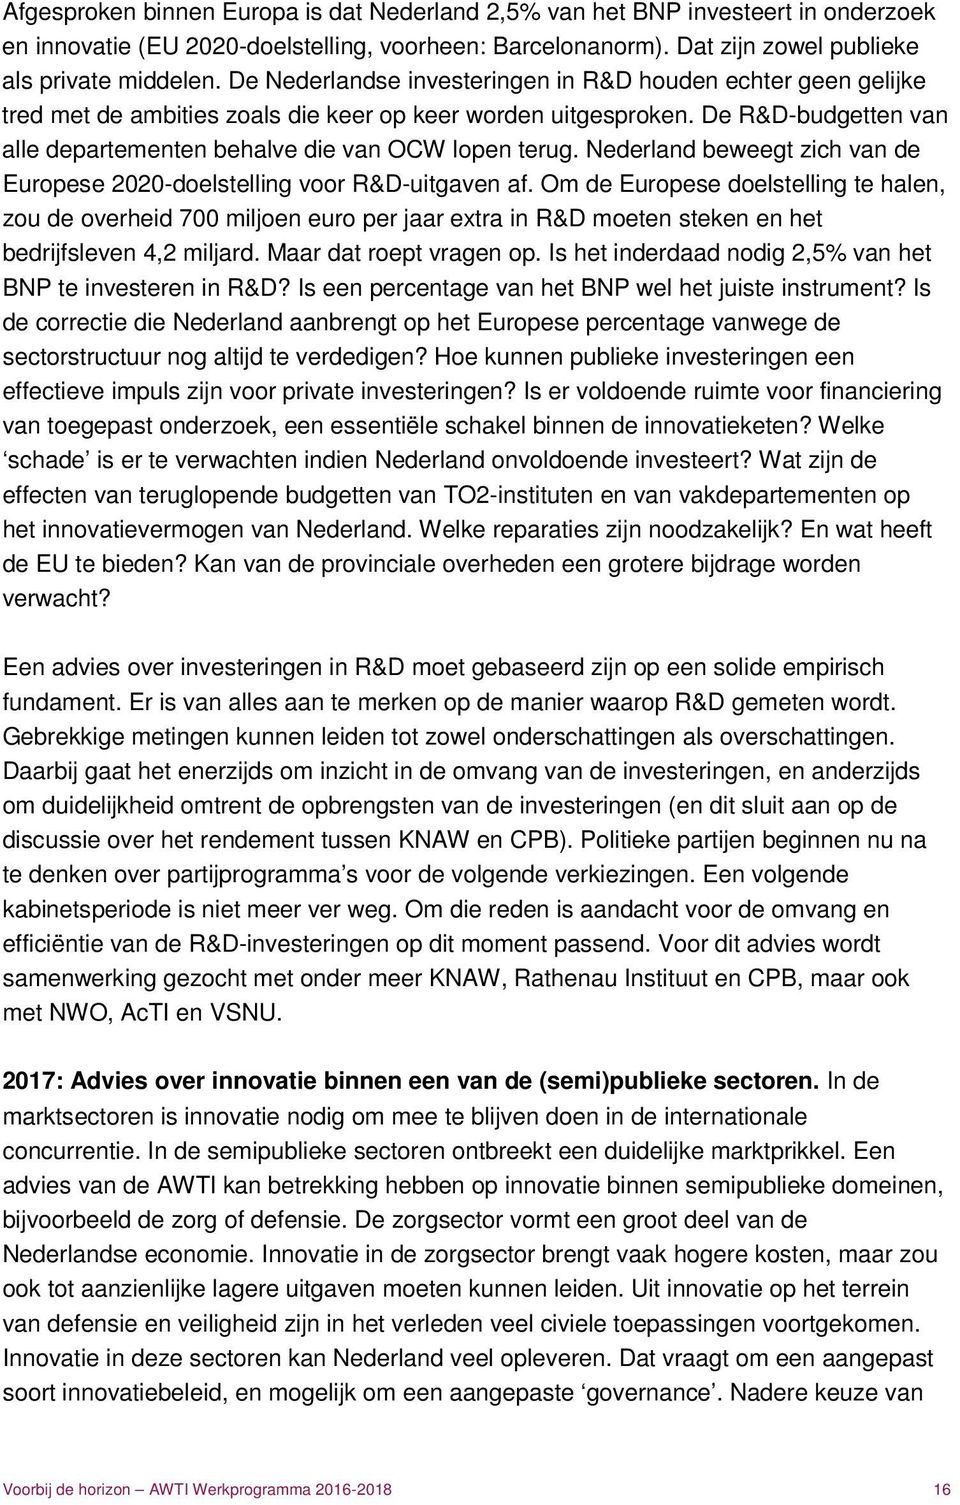 Nederland beweegt zich van de Europese 2020-doelstelling voor R&D-uitgaven af.